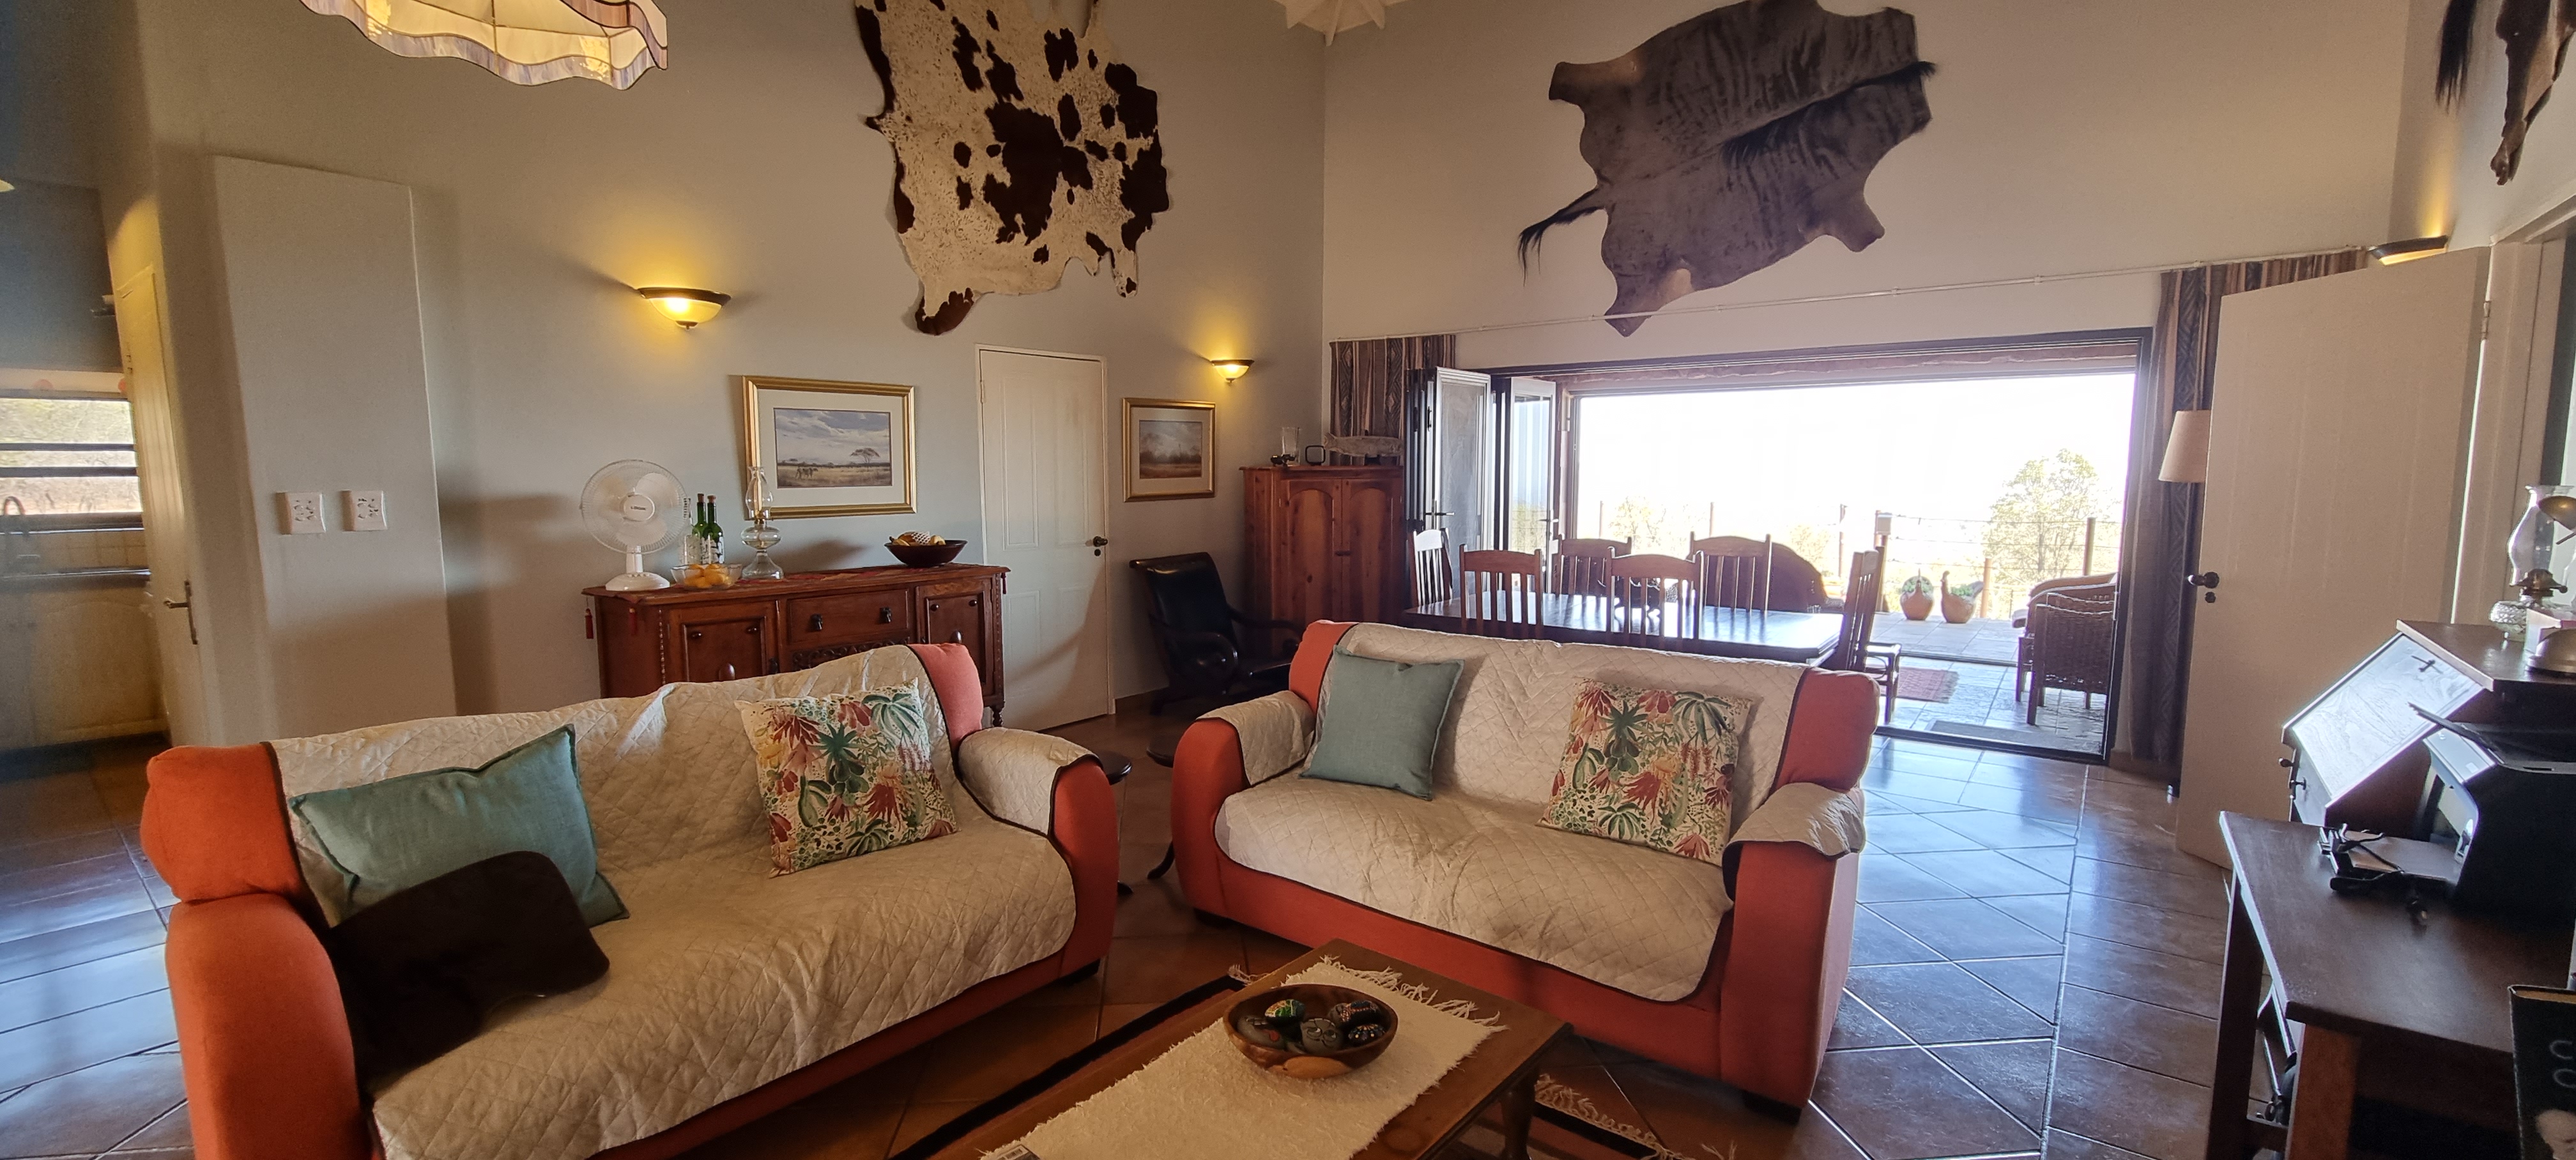 4 Bedroom Property for Sale in Highlands Wilderness Estate Limpopo